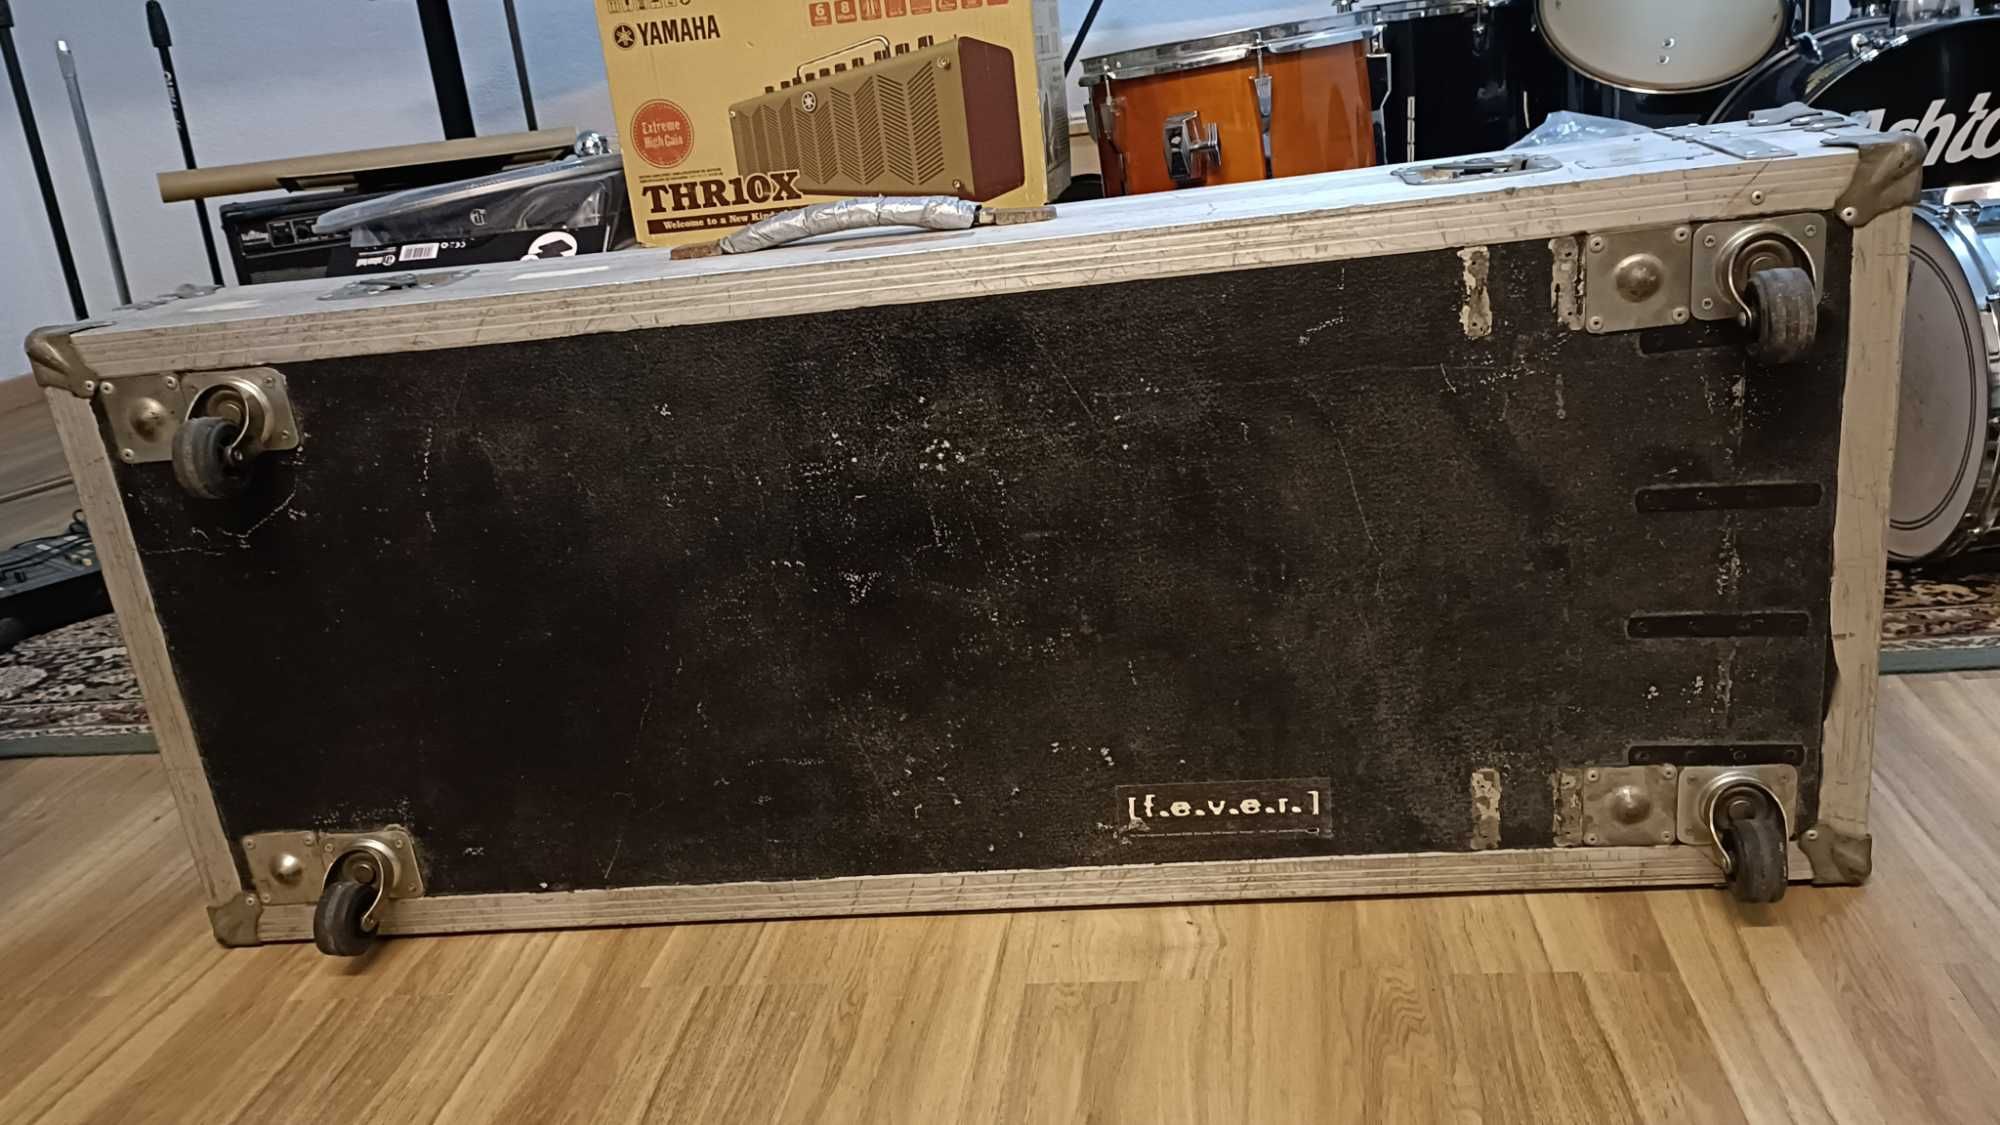 Hardcase (130 cm x 52 cm x 22 cm)